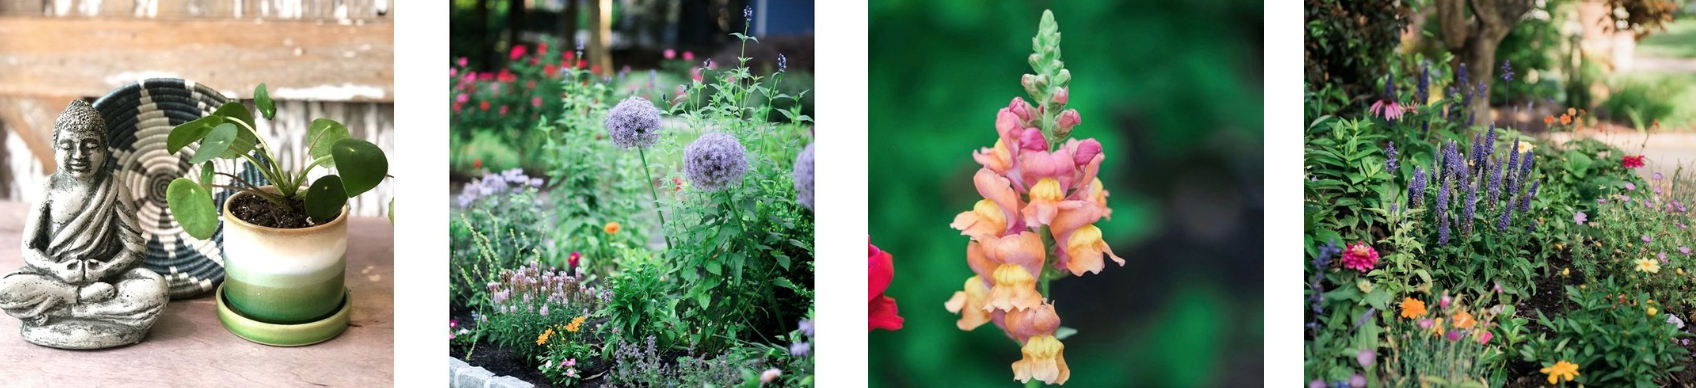 Inspired Garden work examples